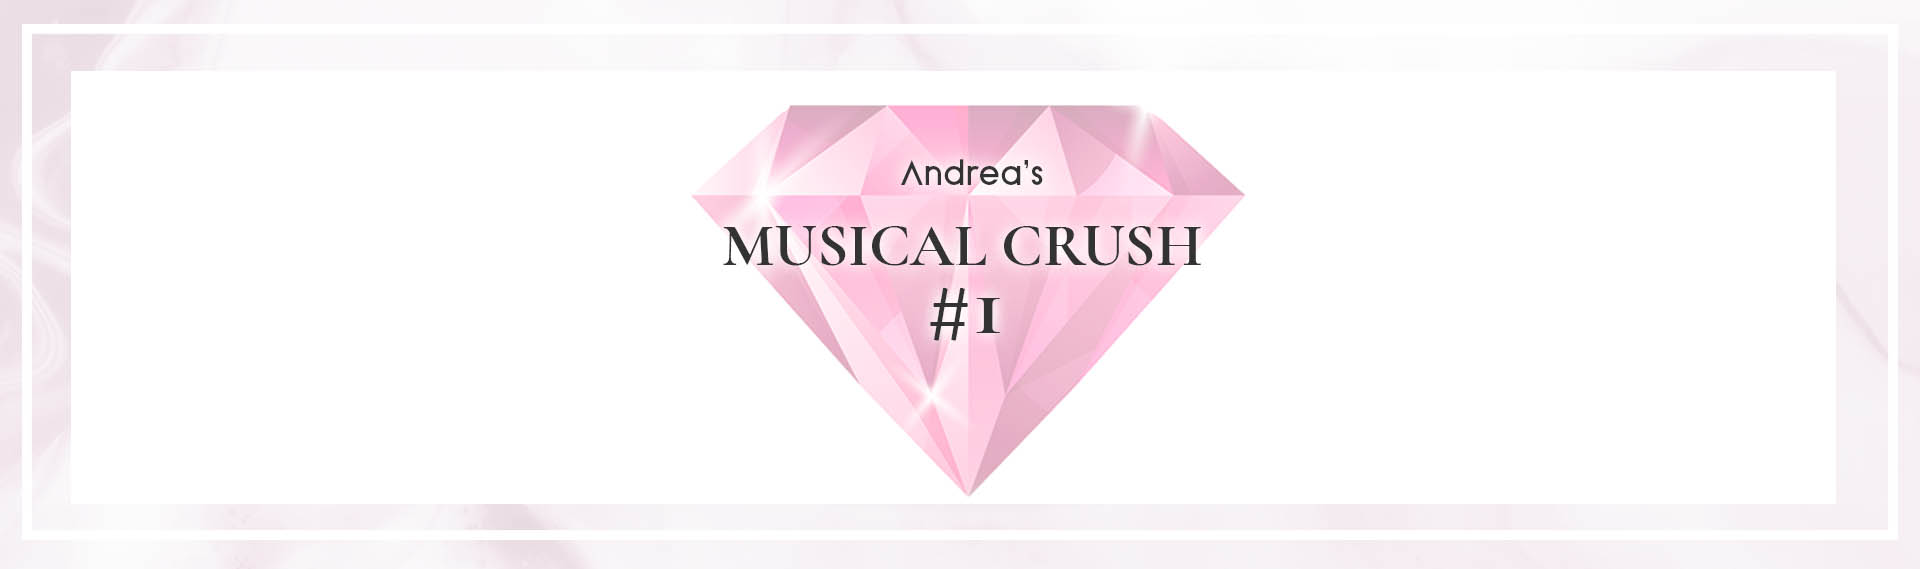 Bannière de rubrique Musical Crush Andrea Lounge